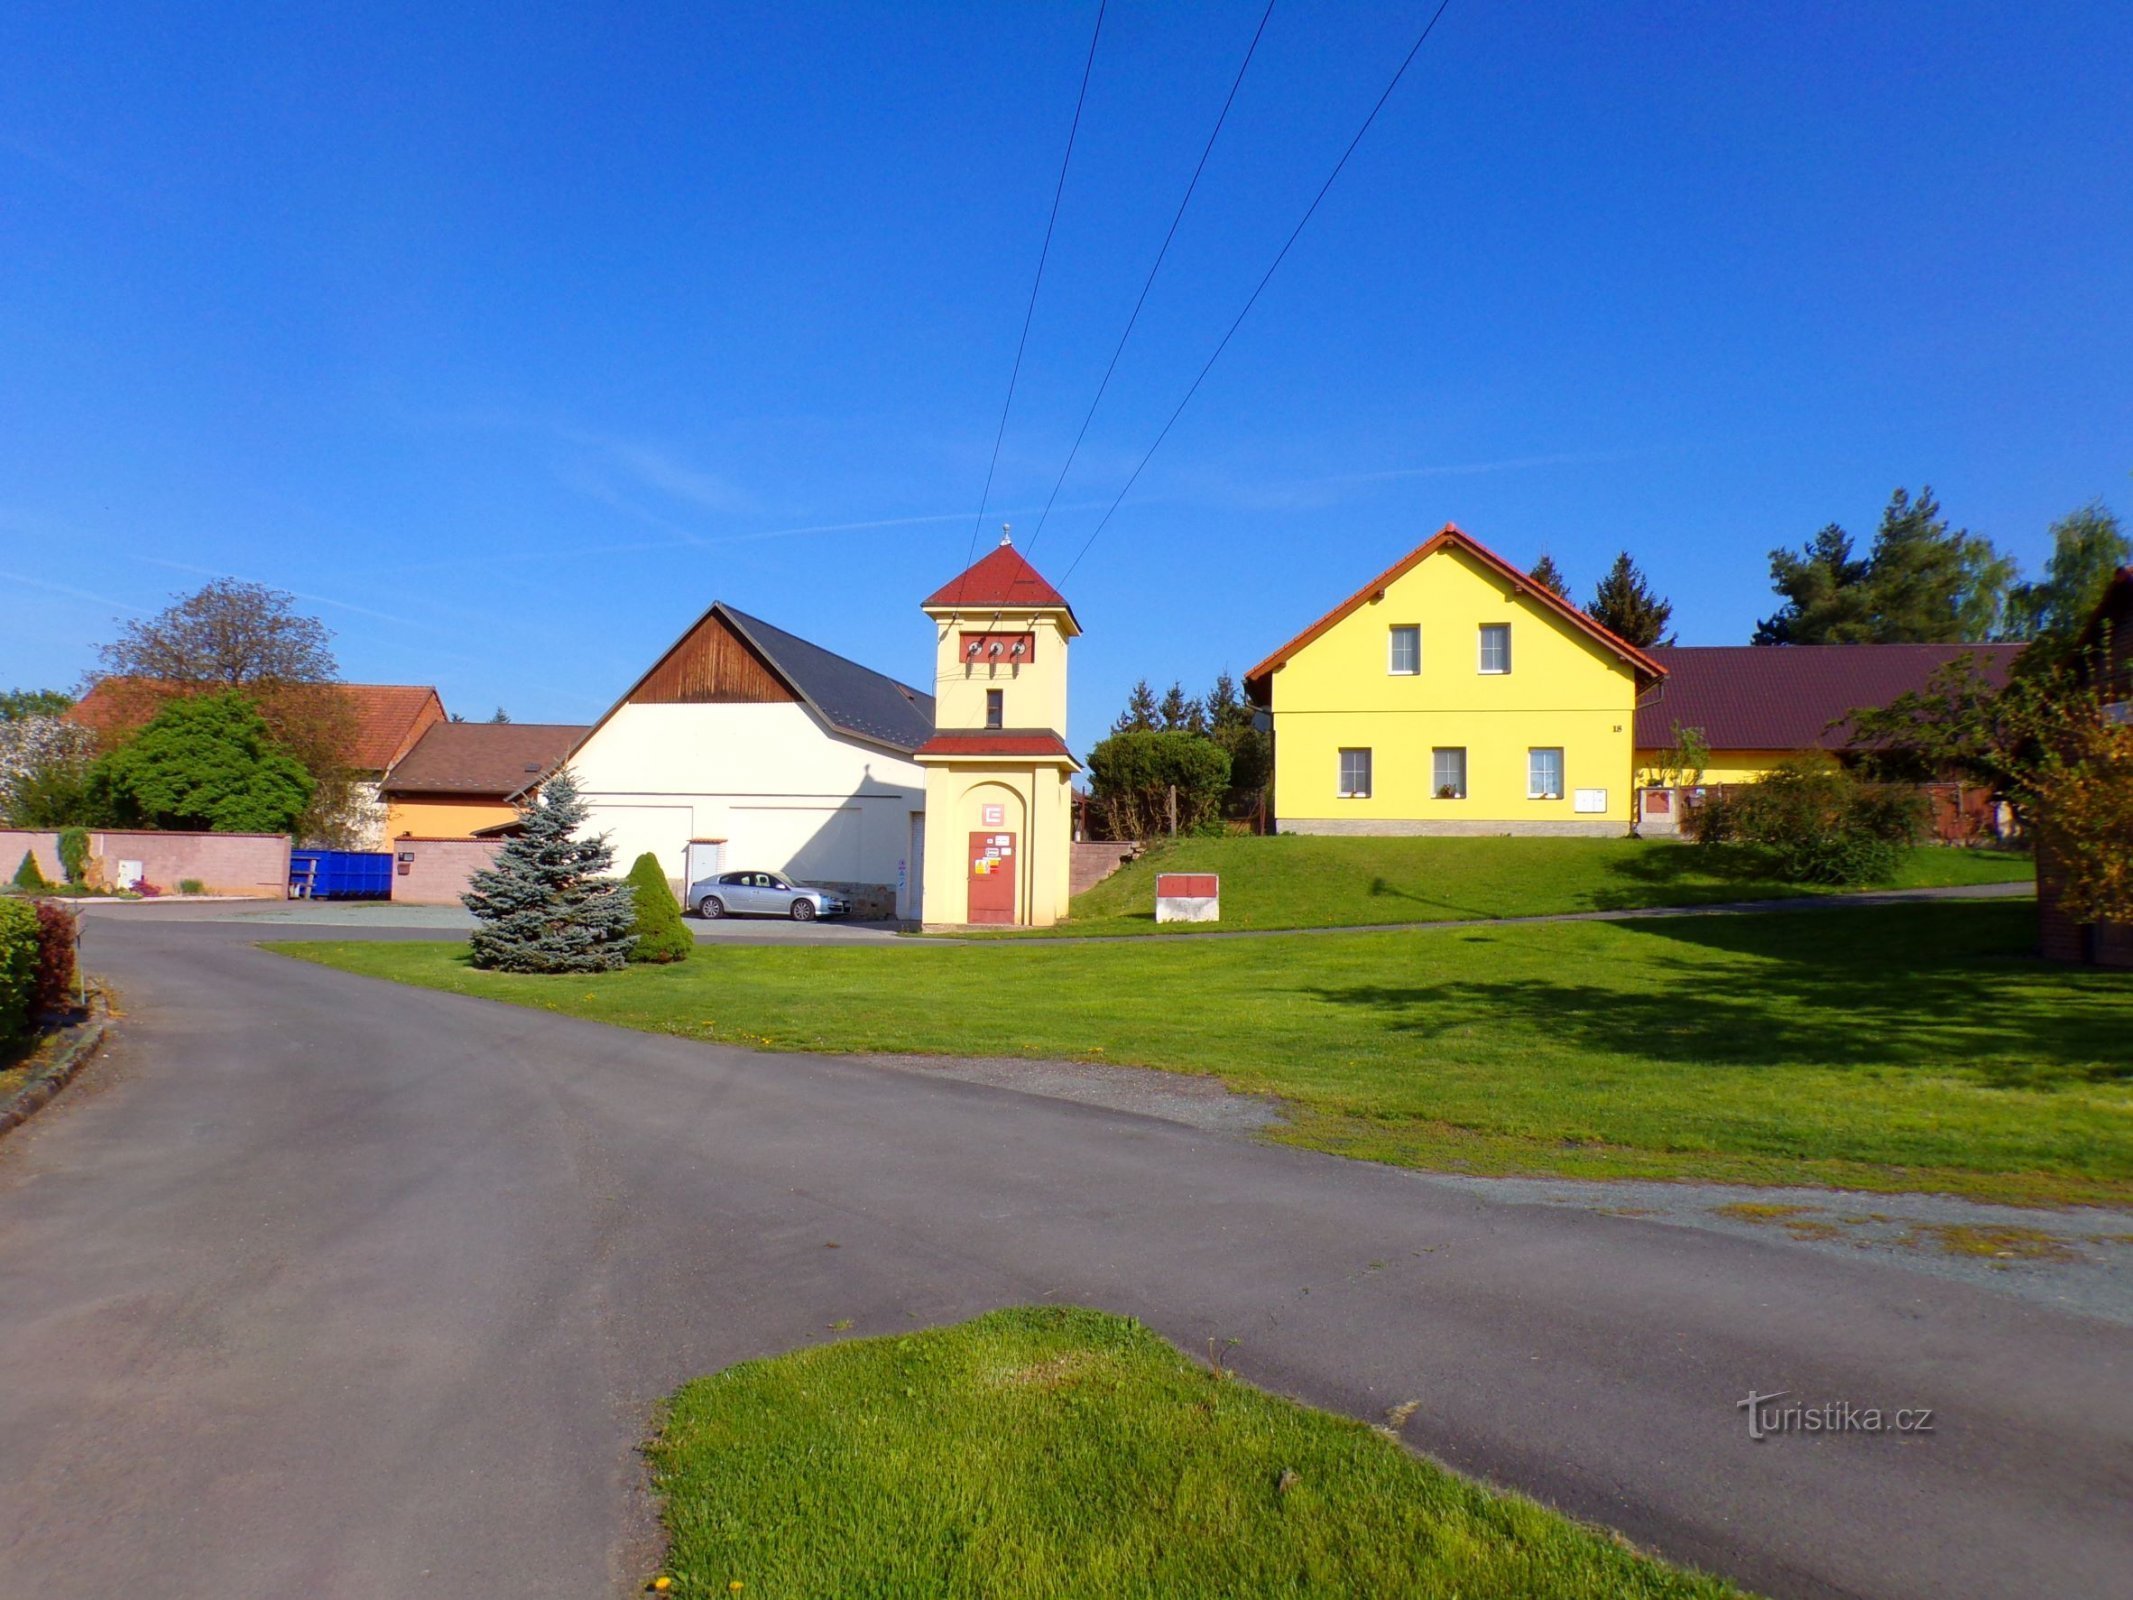 Một phần của làng (Čáslavky, ngày 8.5.2022 tháng XNUMX năm XNUMX)